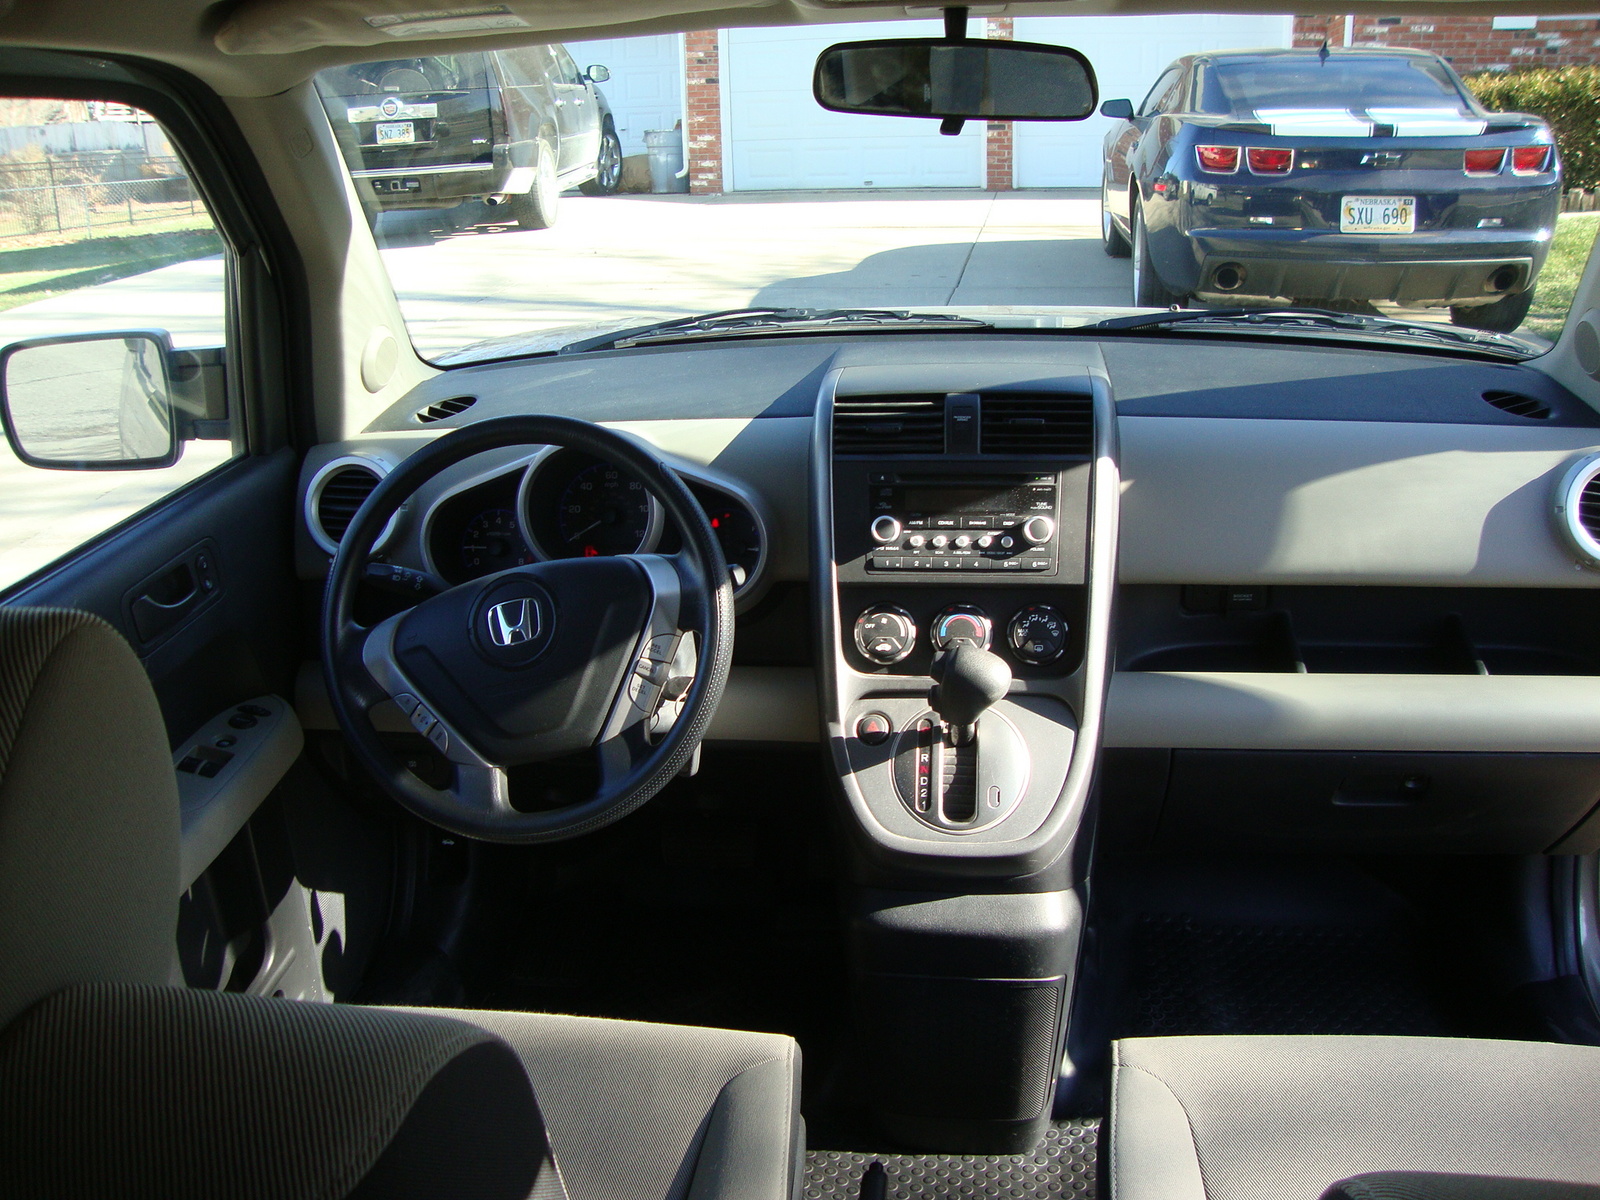 2007 Honda Element - Interior Pictures - CarGurus